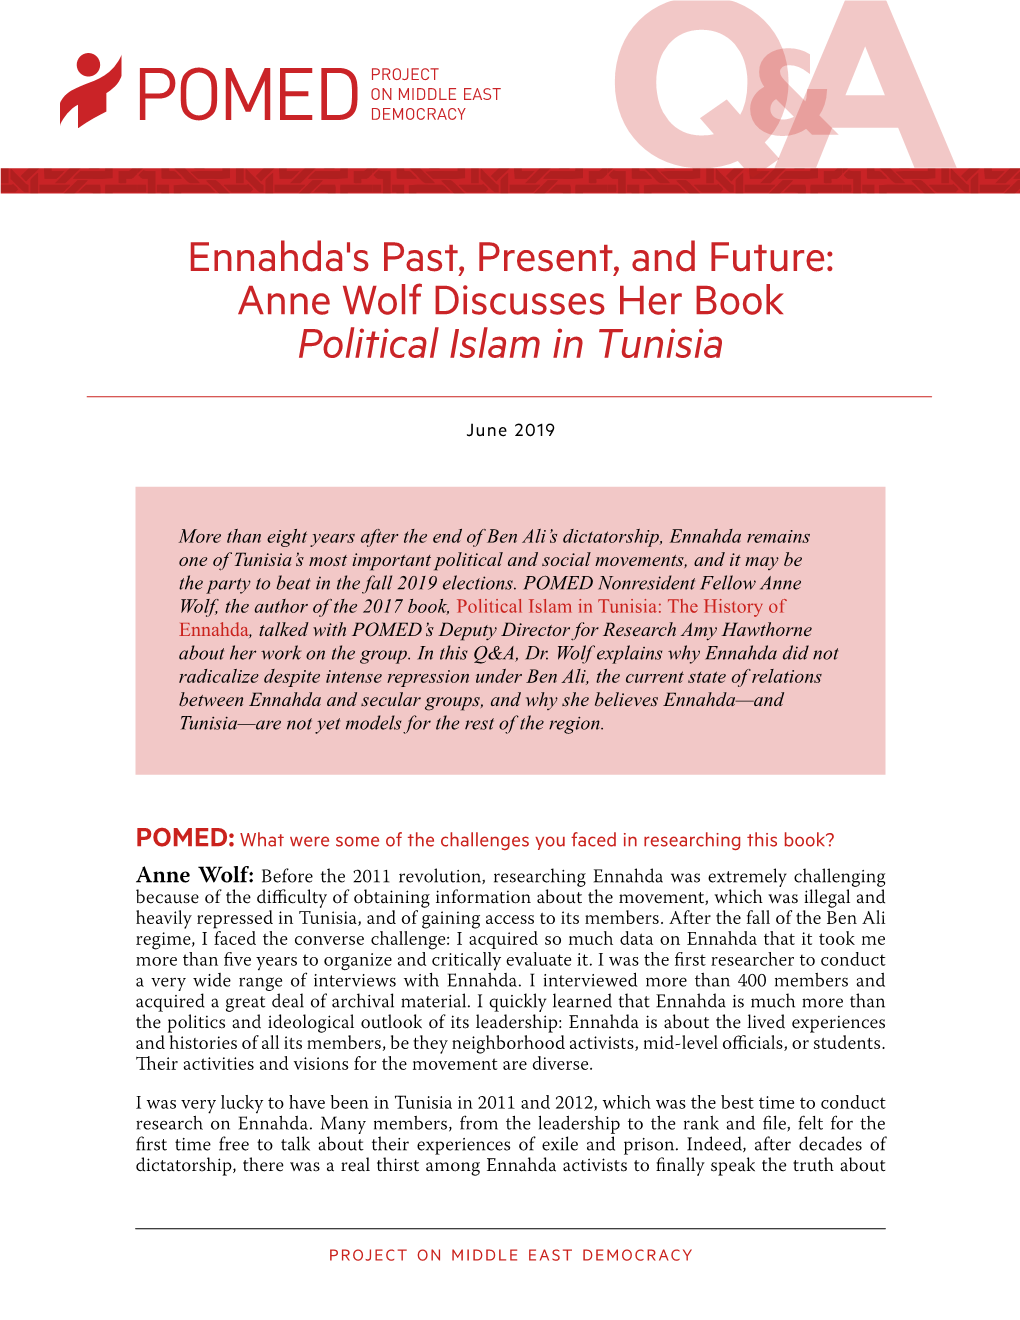 Anne Wolf Discusses Her Book Political Islam in Tunisia